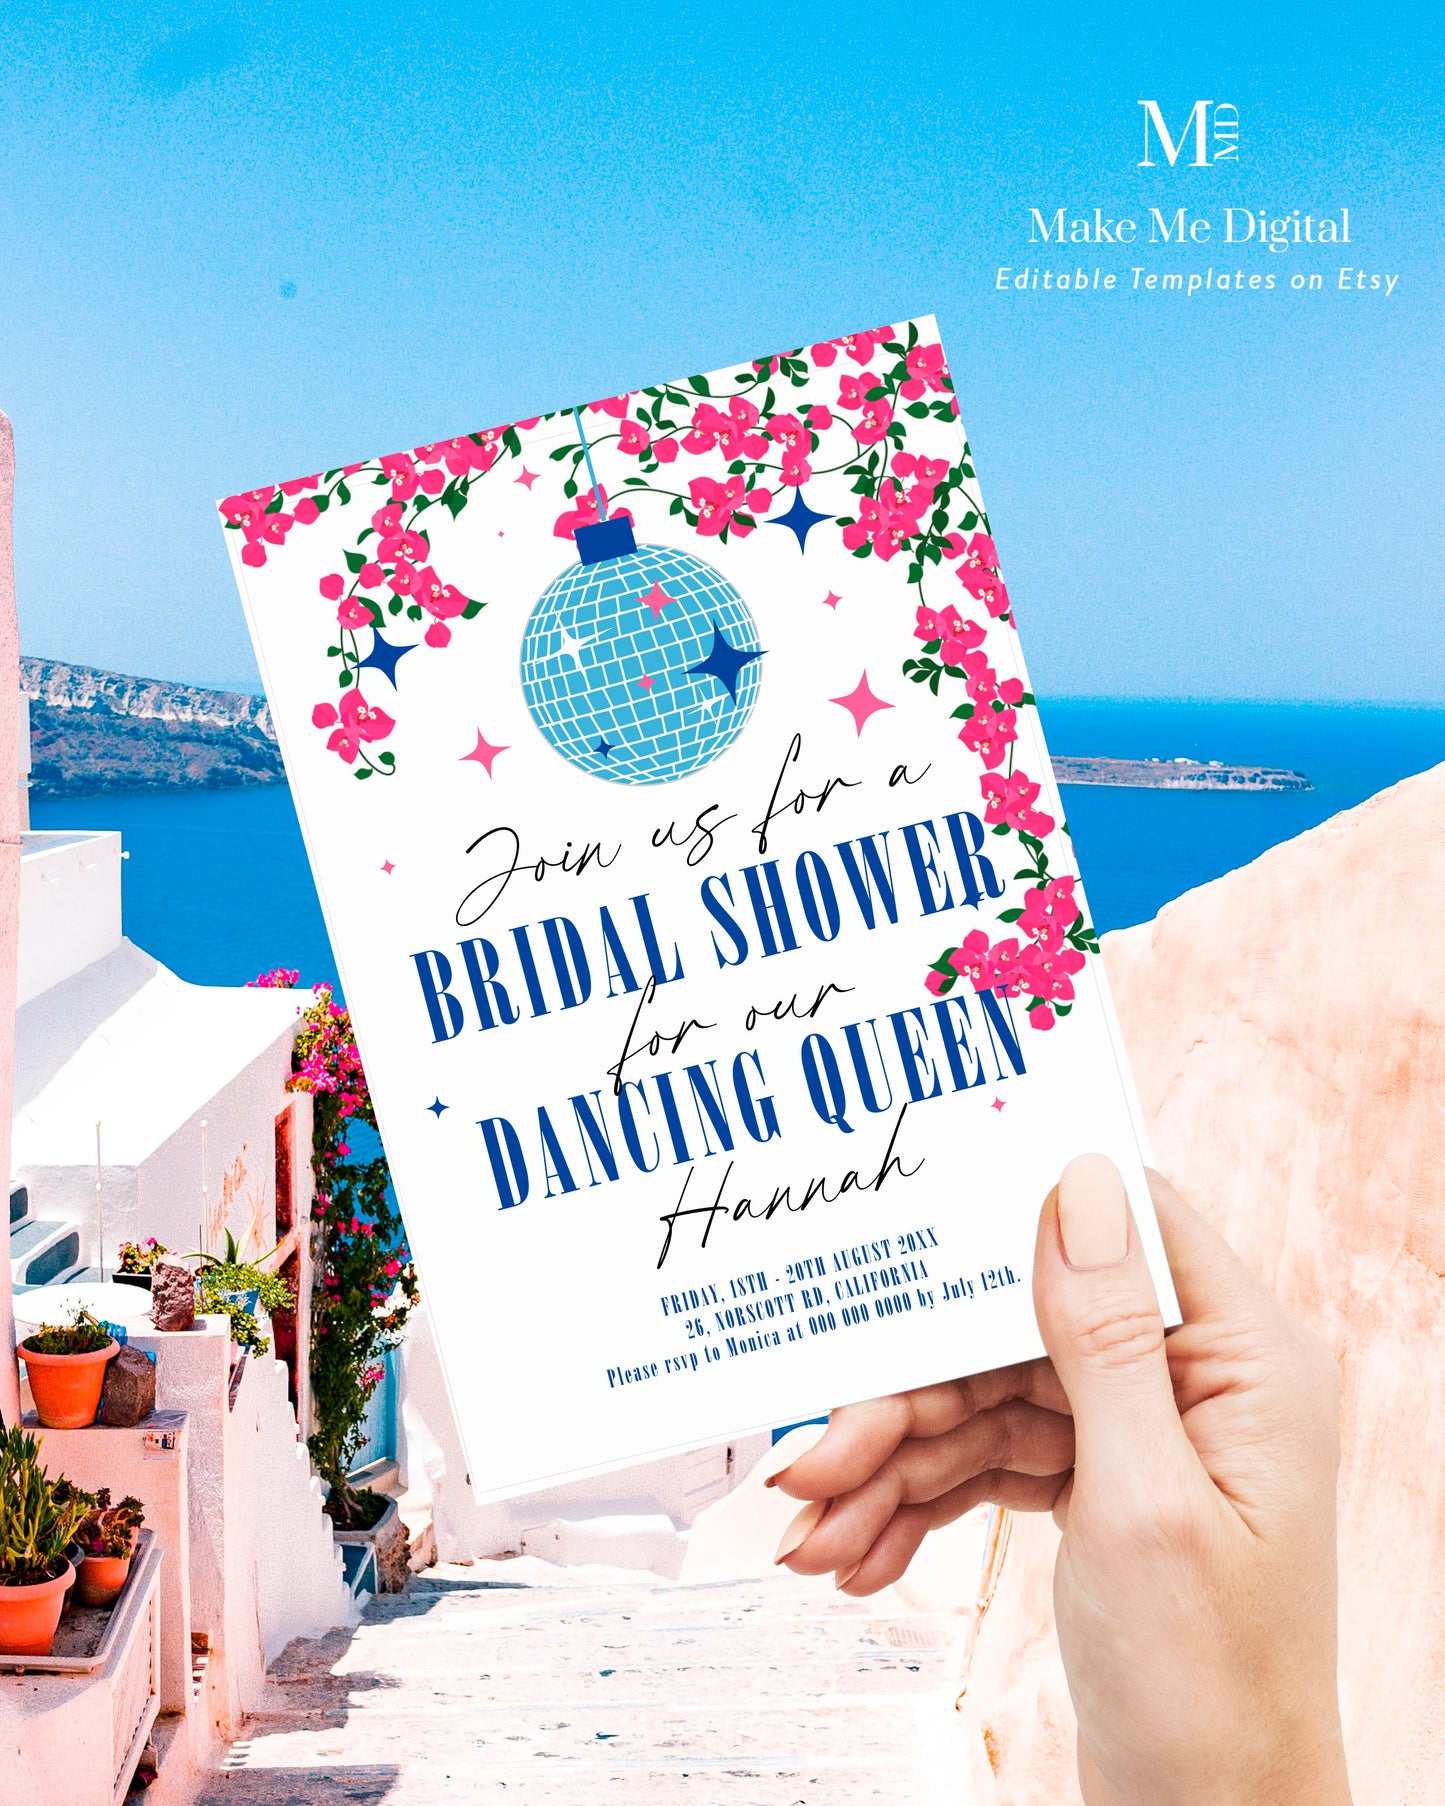 Dancing Queen Mamma Mia Bridal Shower Invitation template